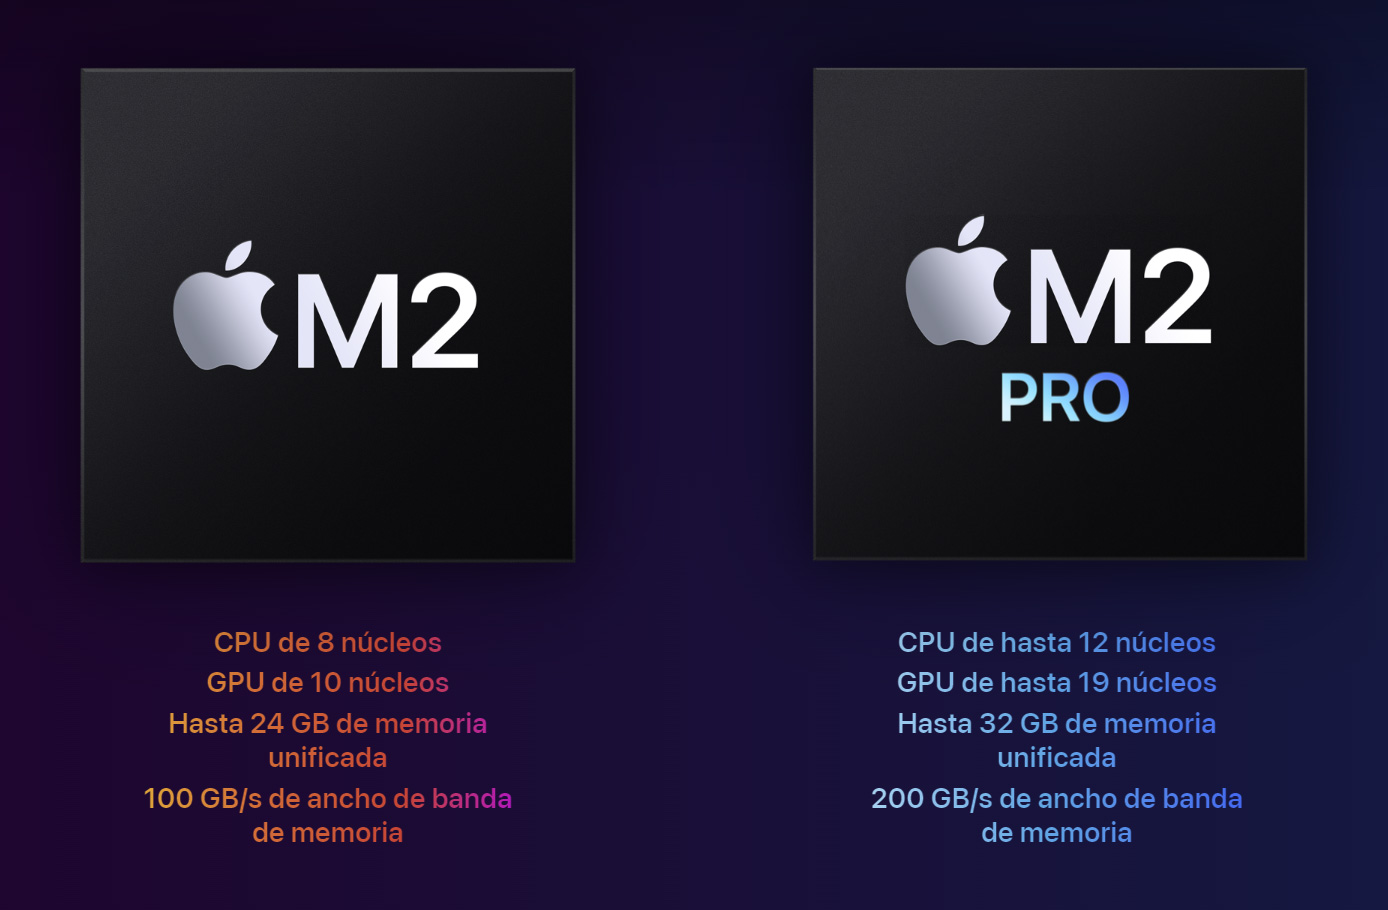 Los chips M2 y M2 Pro, frente a frente, disponibles en las tres configuraciones base del nuevo Apple Mac mini M2 de 2023